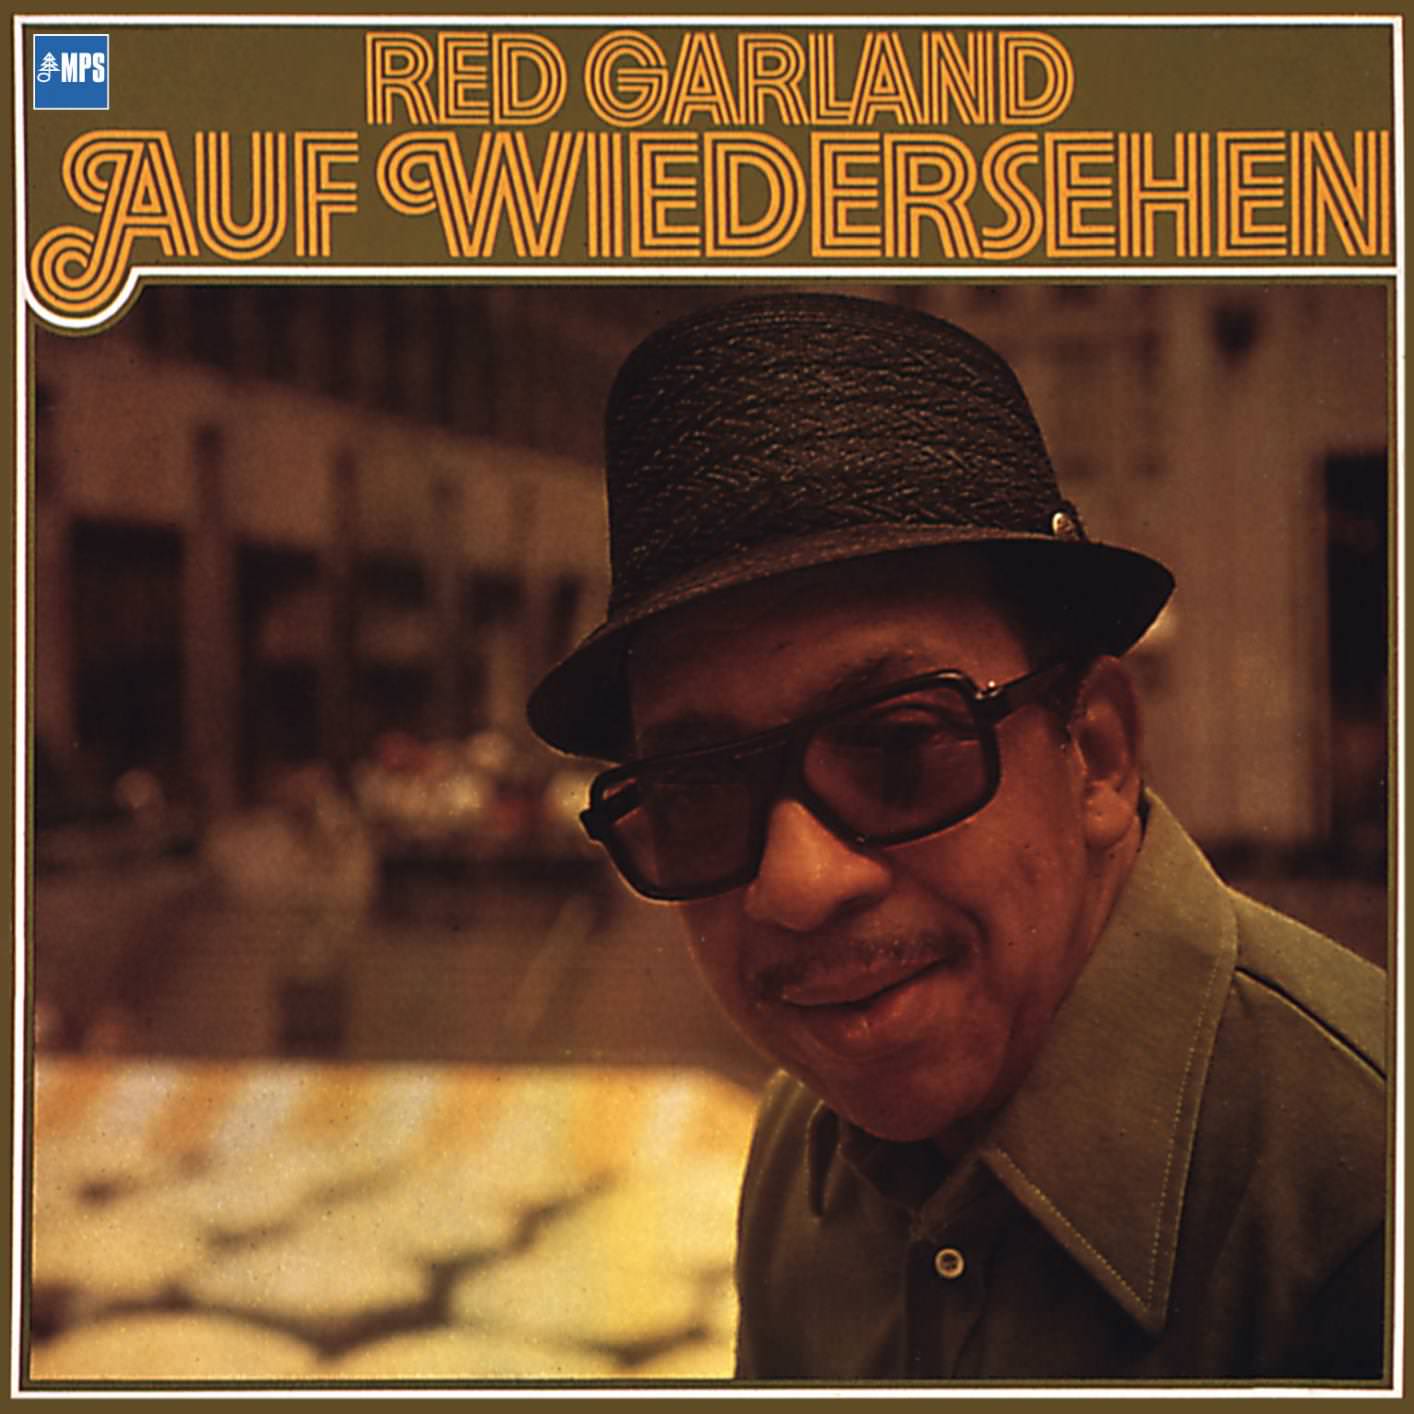 Red Garland - Auf Wiedersehen (1975/2015) [HighResAudio FLAC 24bit/88,2kHz]